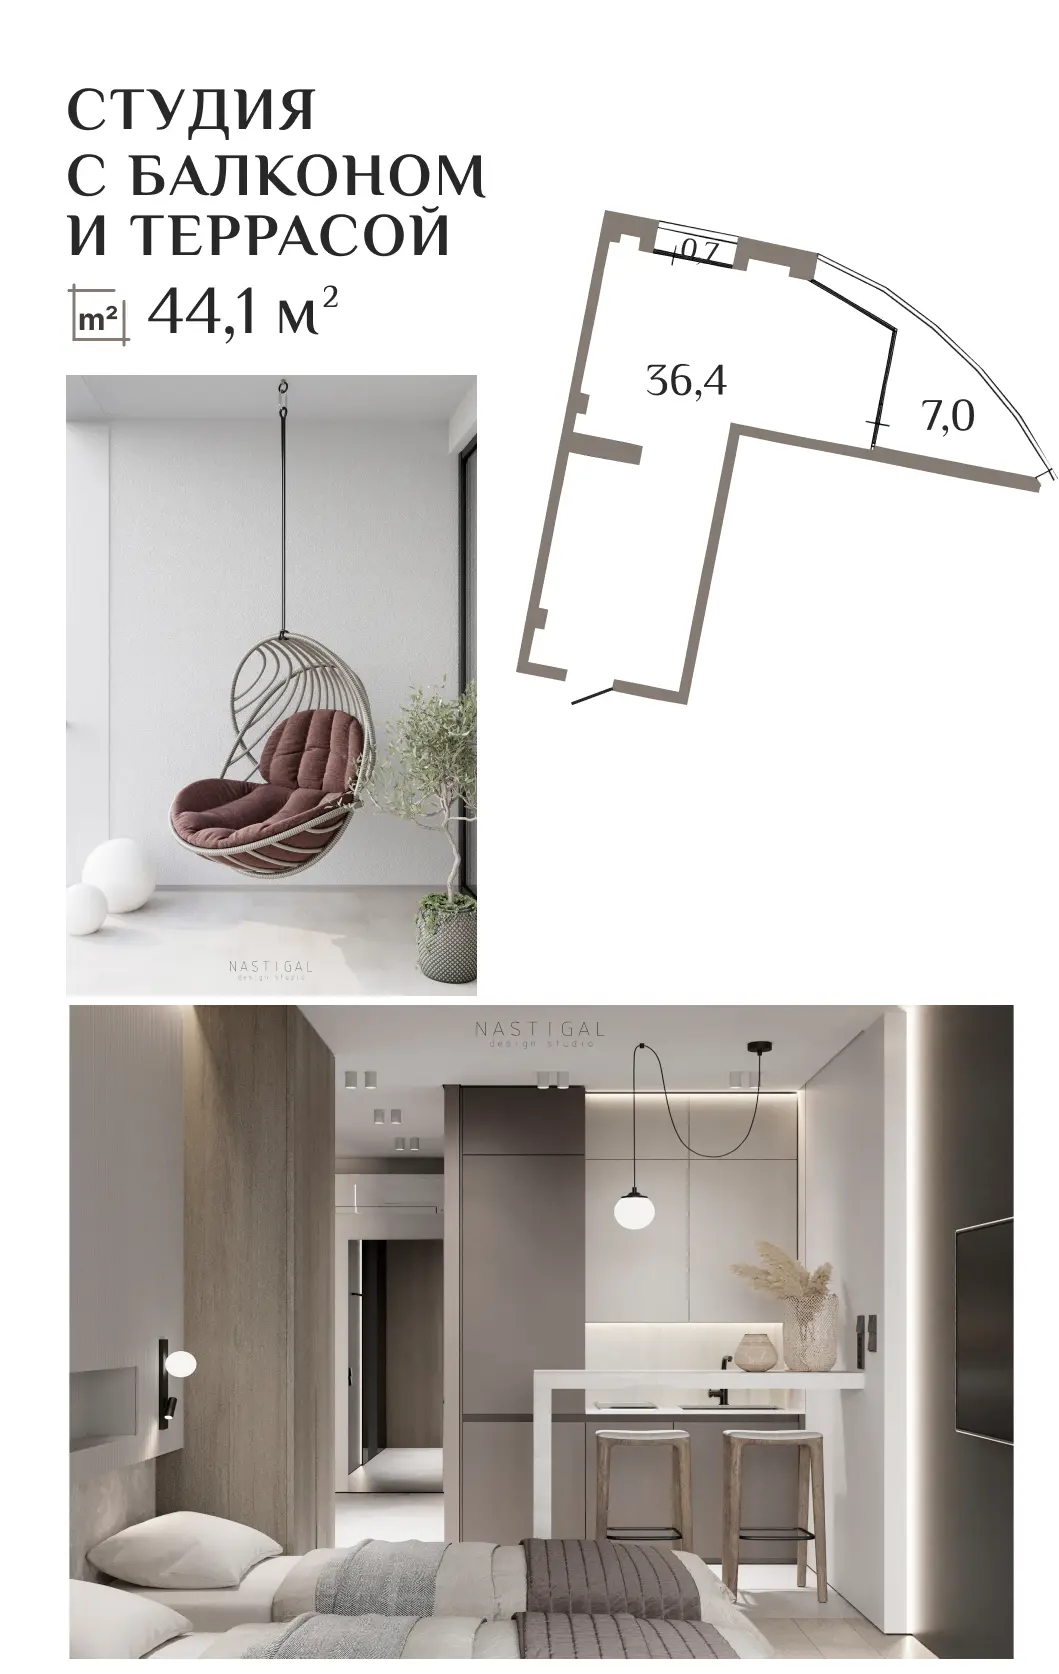 АК ГОРКА – планировка и фотографии аппартаментов - студии 35 кв.м.